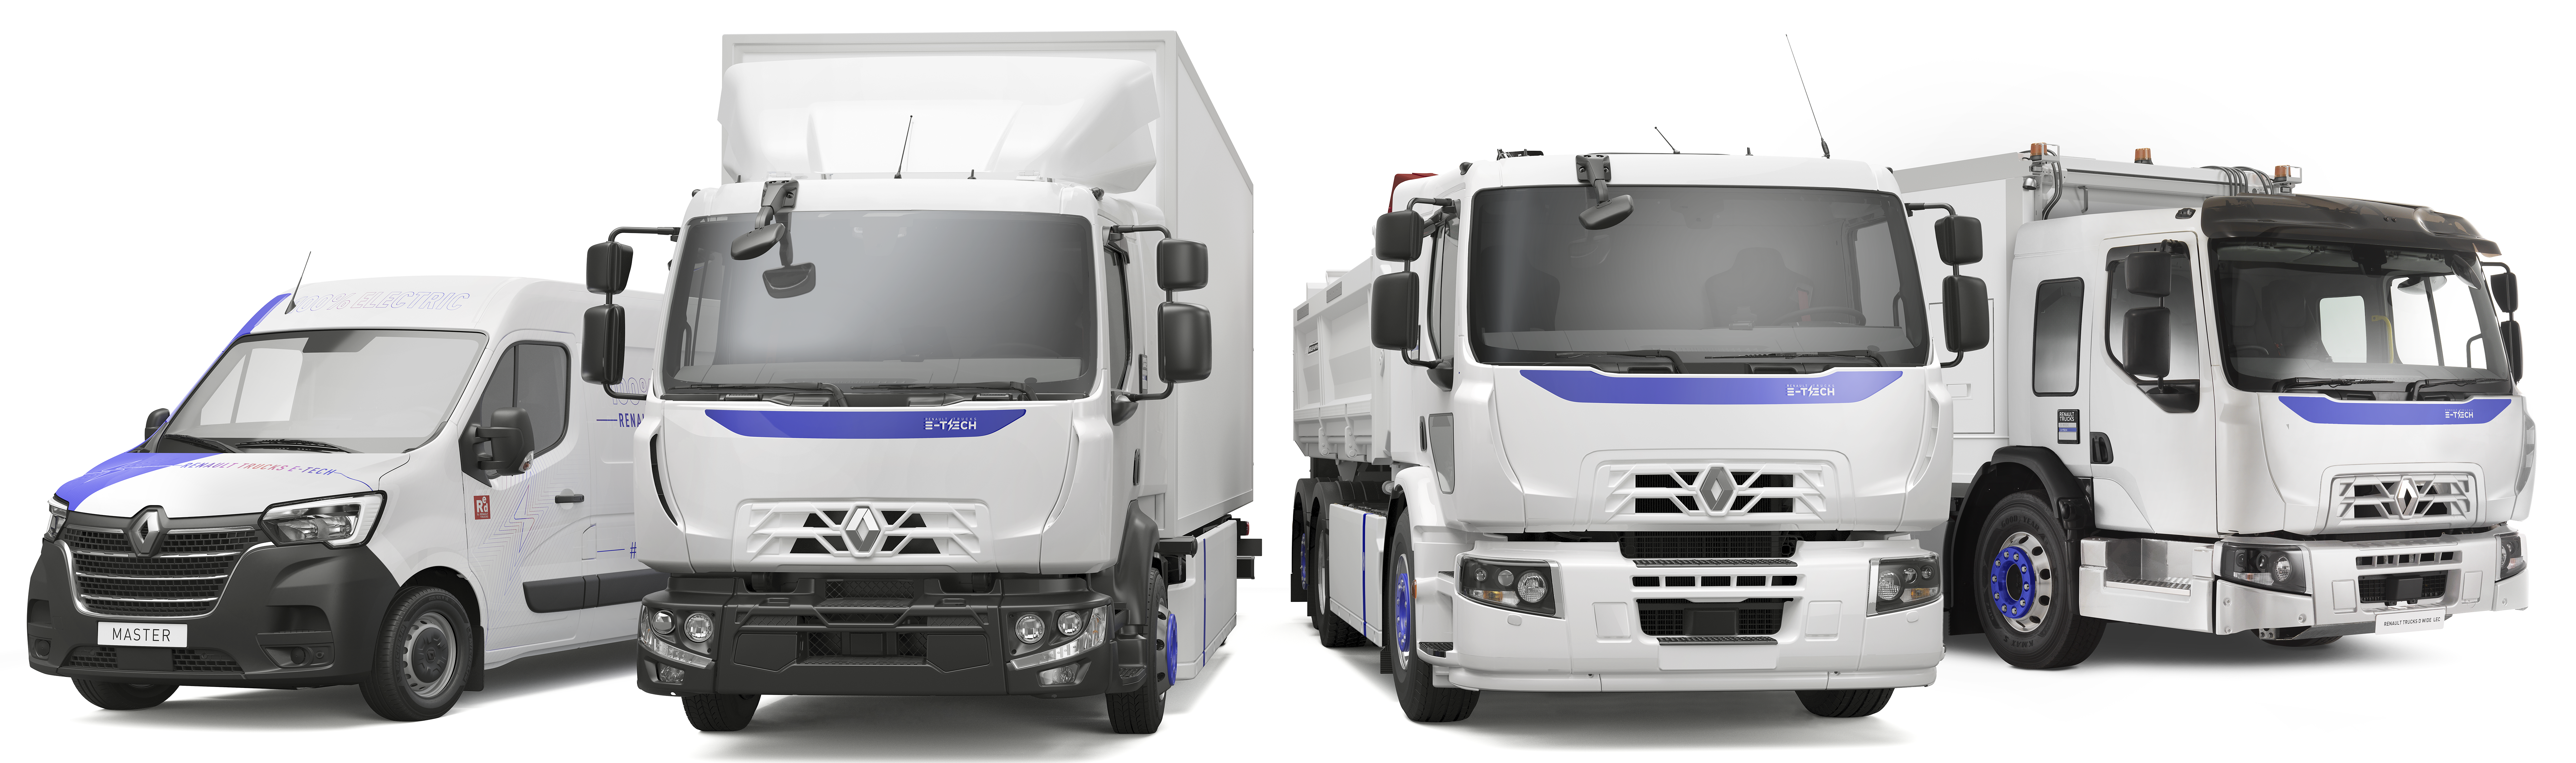 Renault Trucks_gamme E_Tech électrique